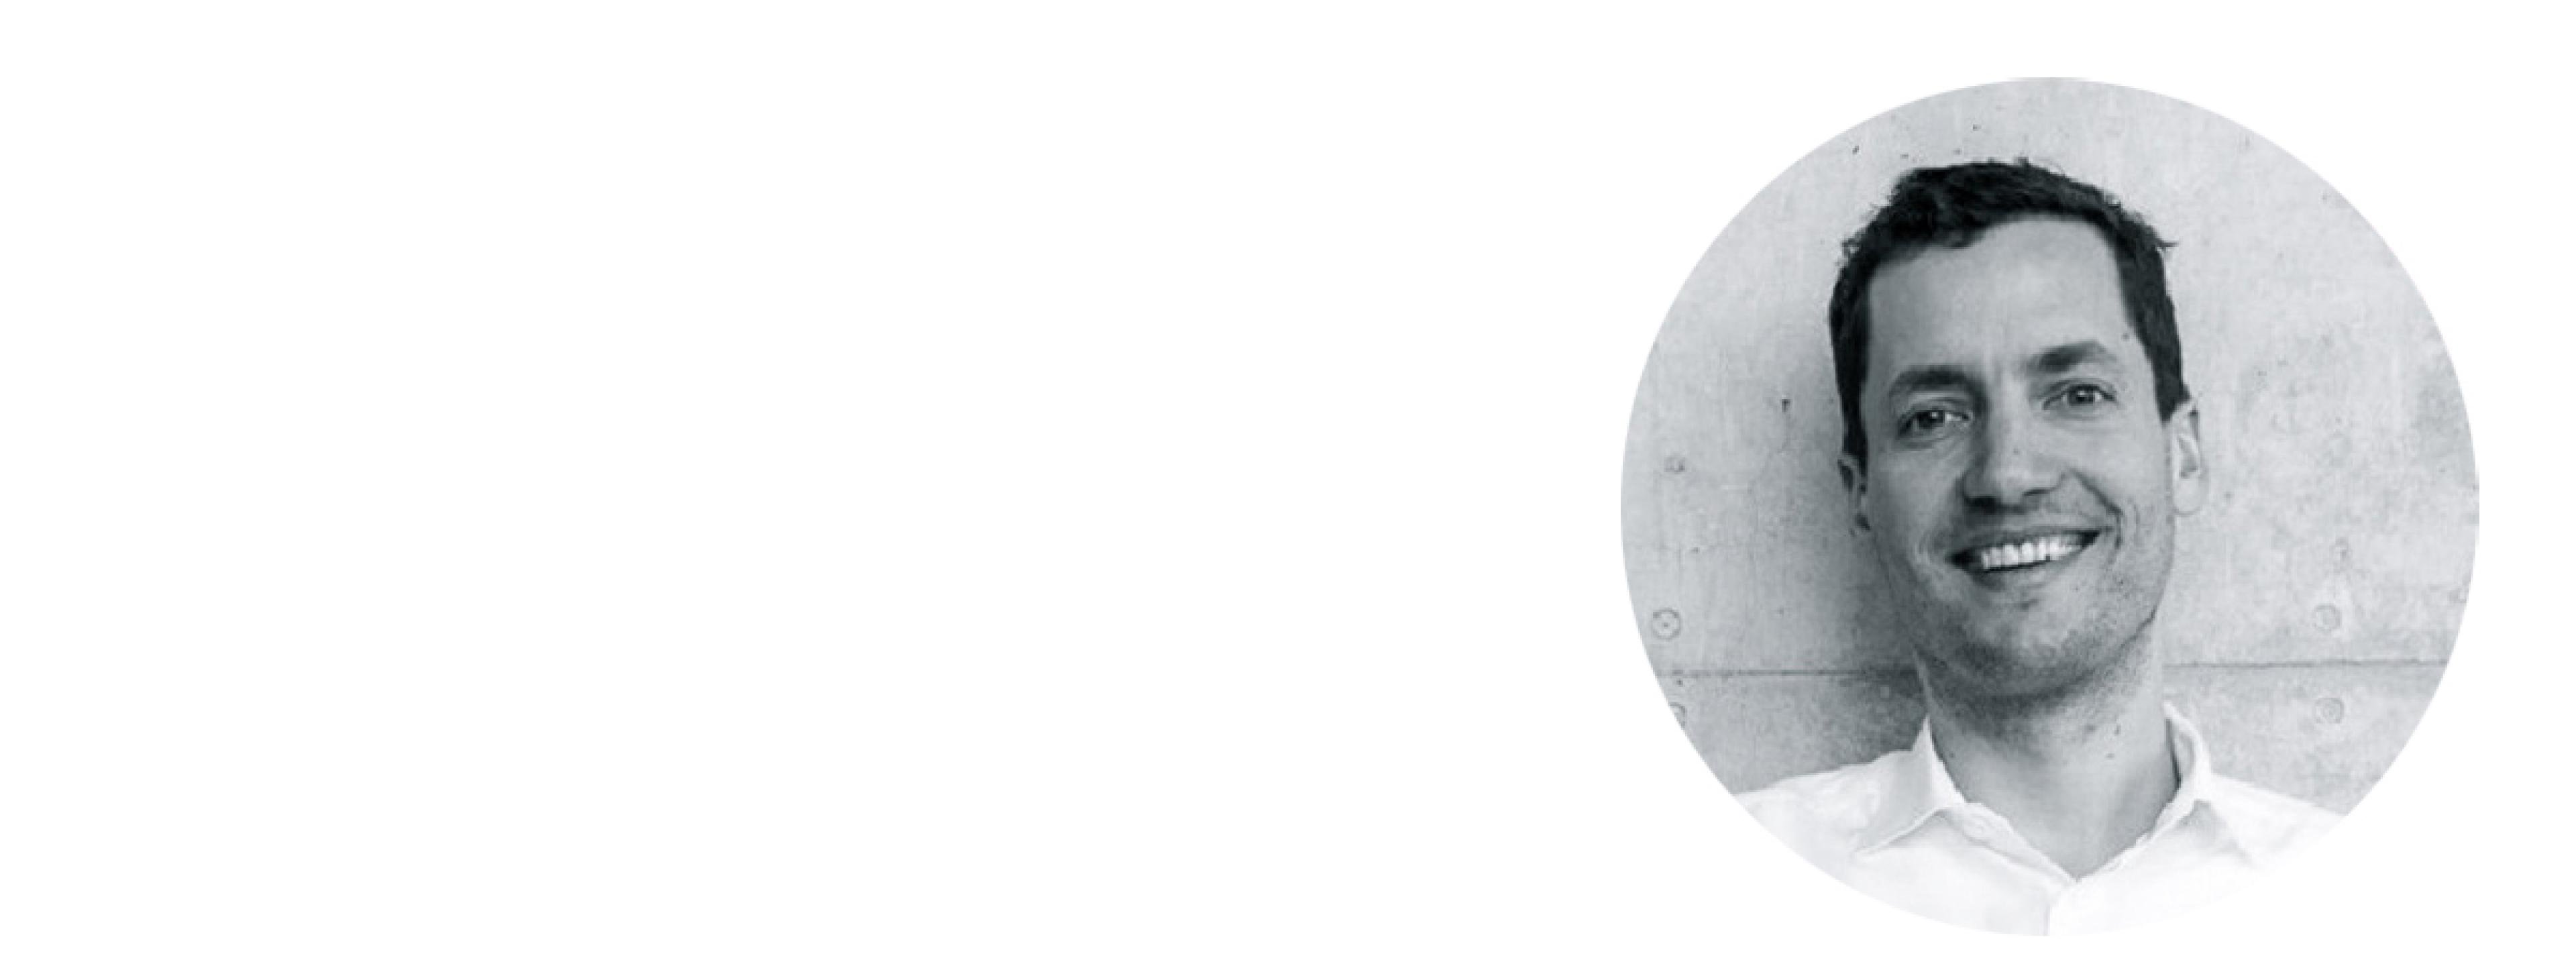 Sebastian Guoy, Mitgründer der Firma UrMo. Das Bild ist ein weißer Streifen, der Kopf ist in schwarz-weiß in einer Vignette rechts zu sehen.